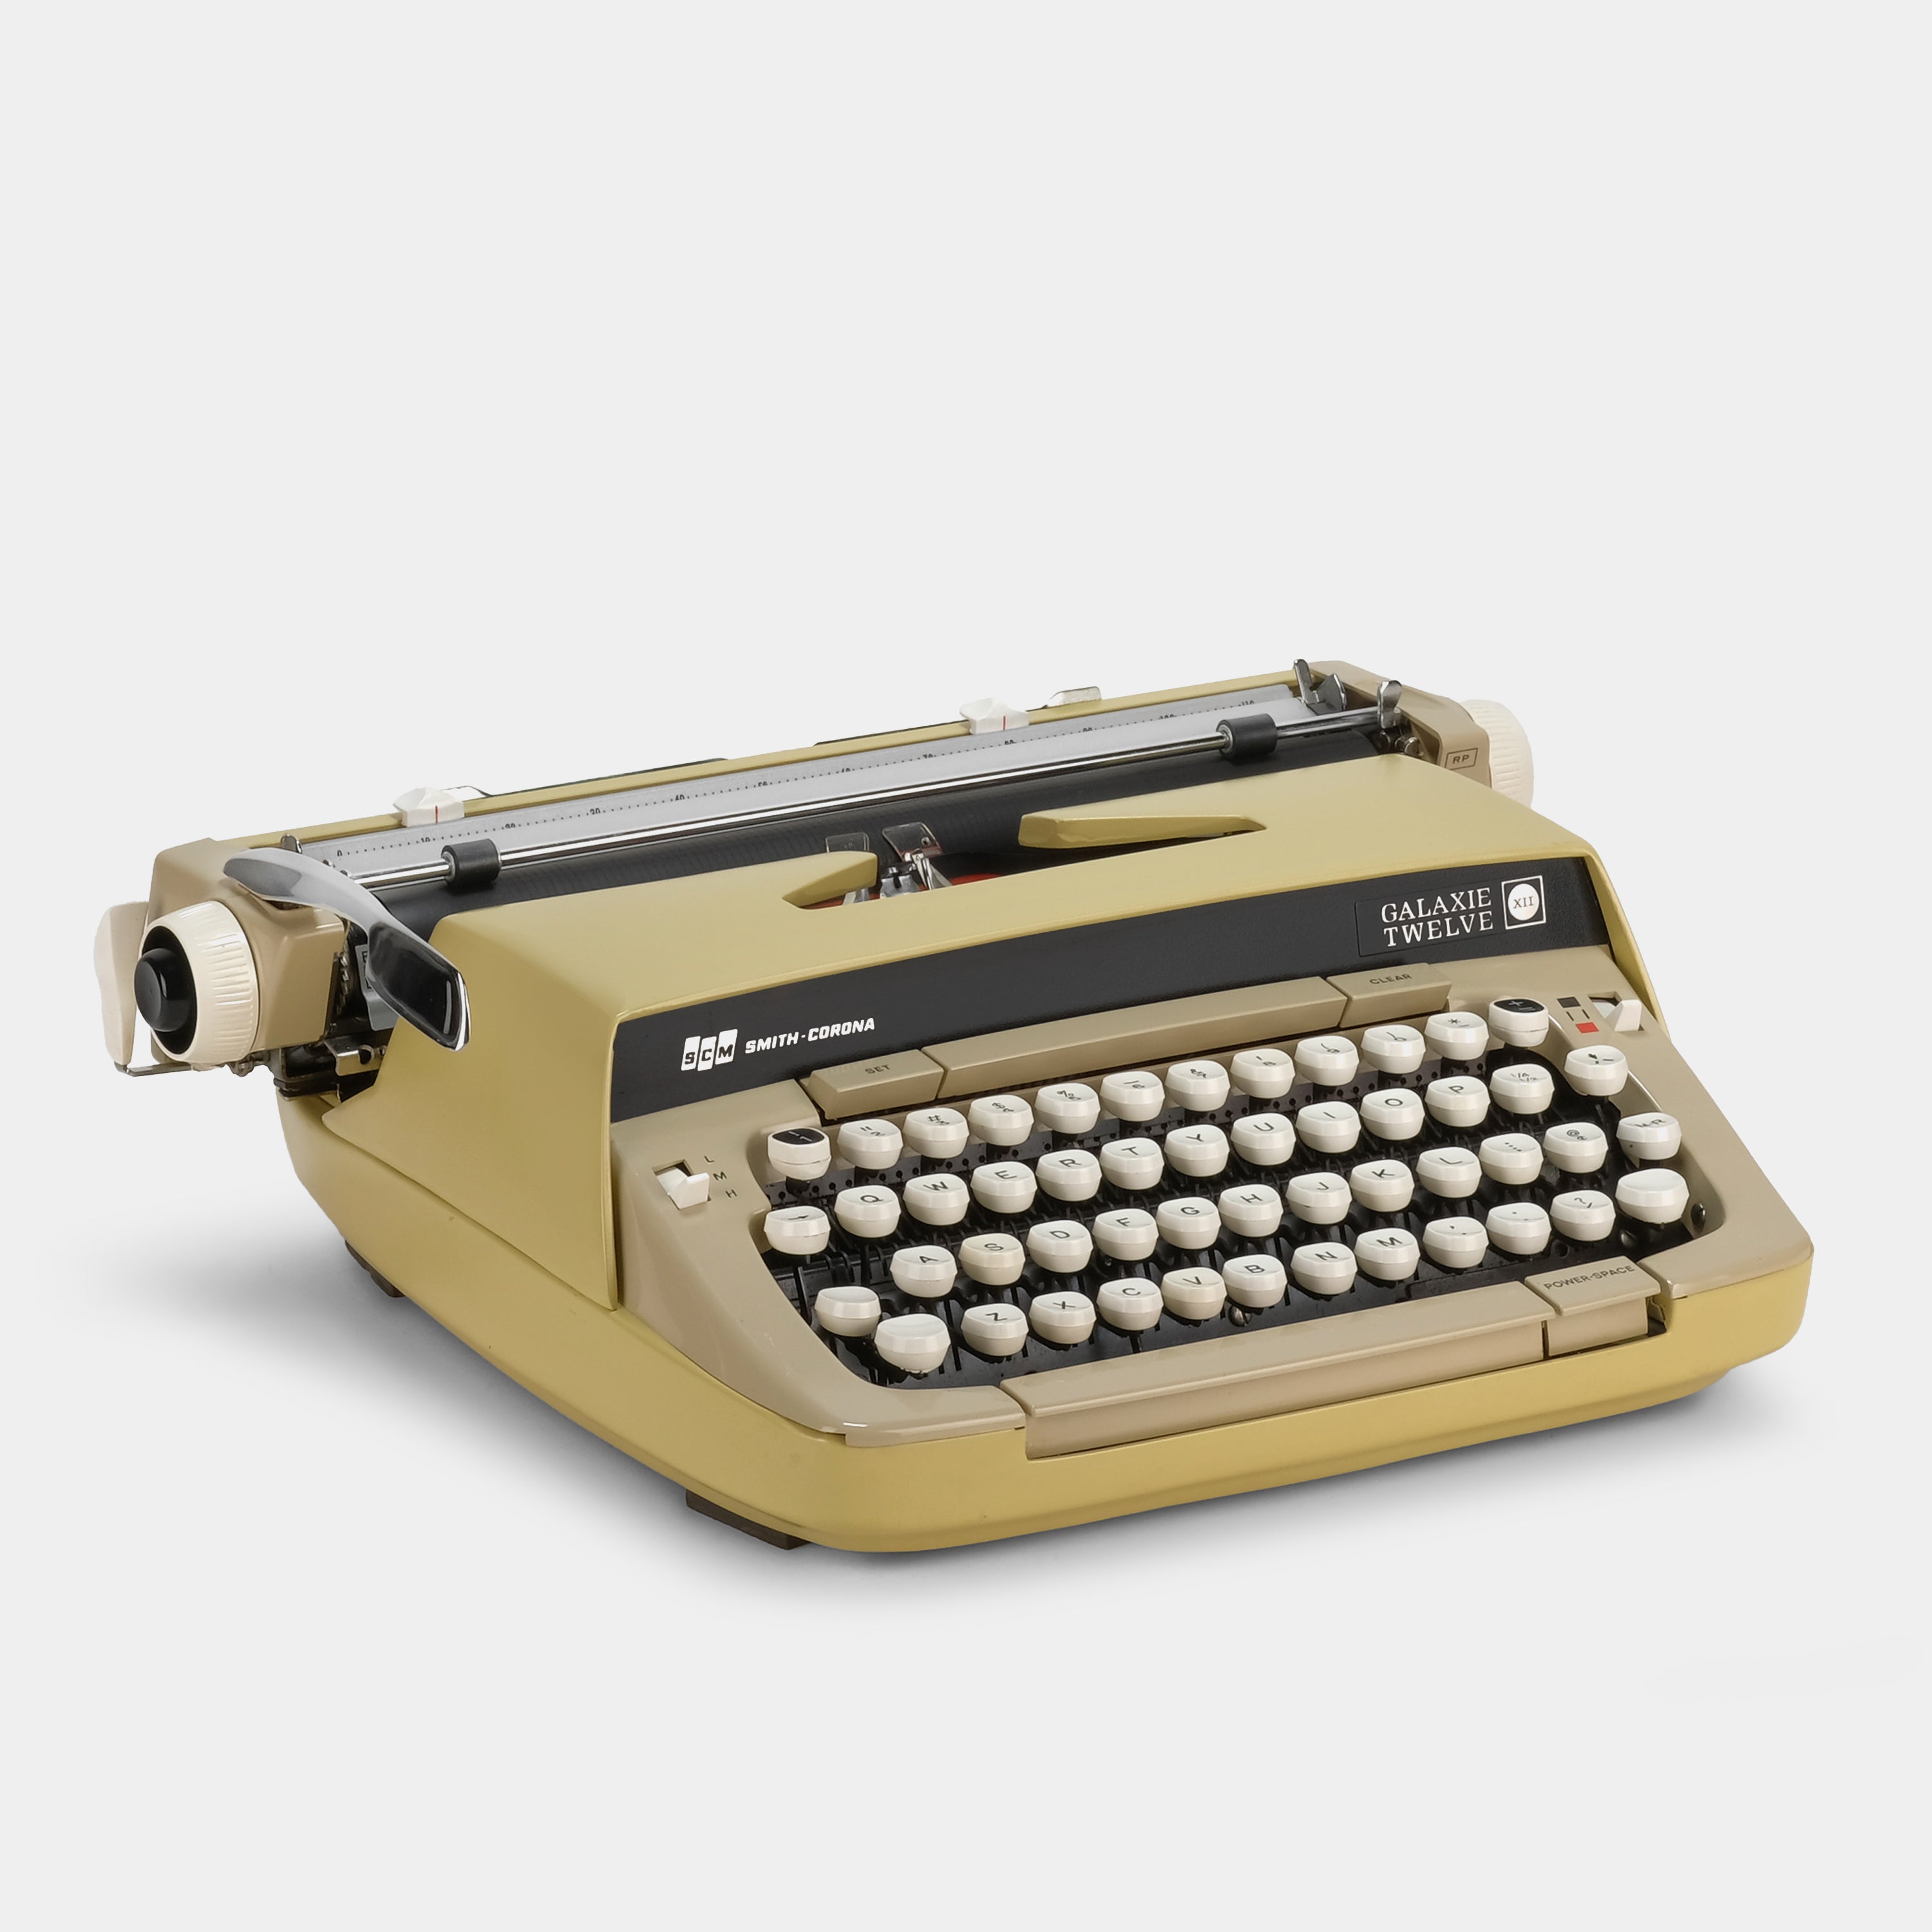 Smith-Corona Galaxie XII Mustard Yellow Manual Typewriter